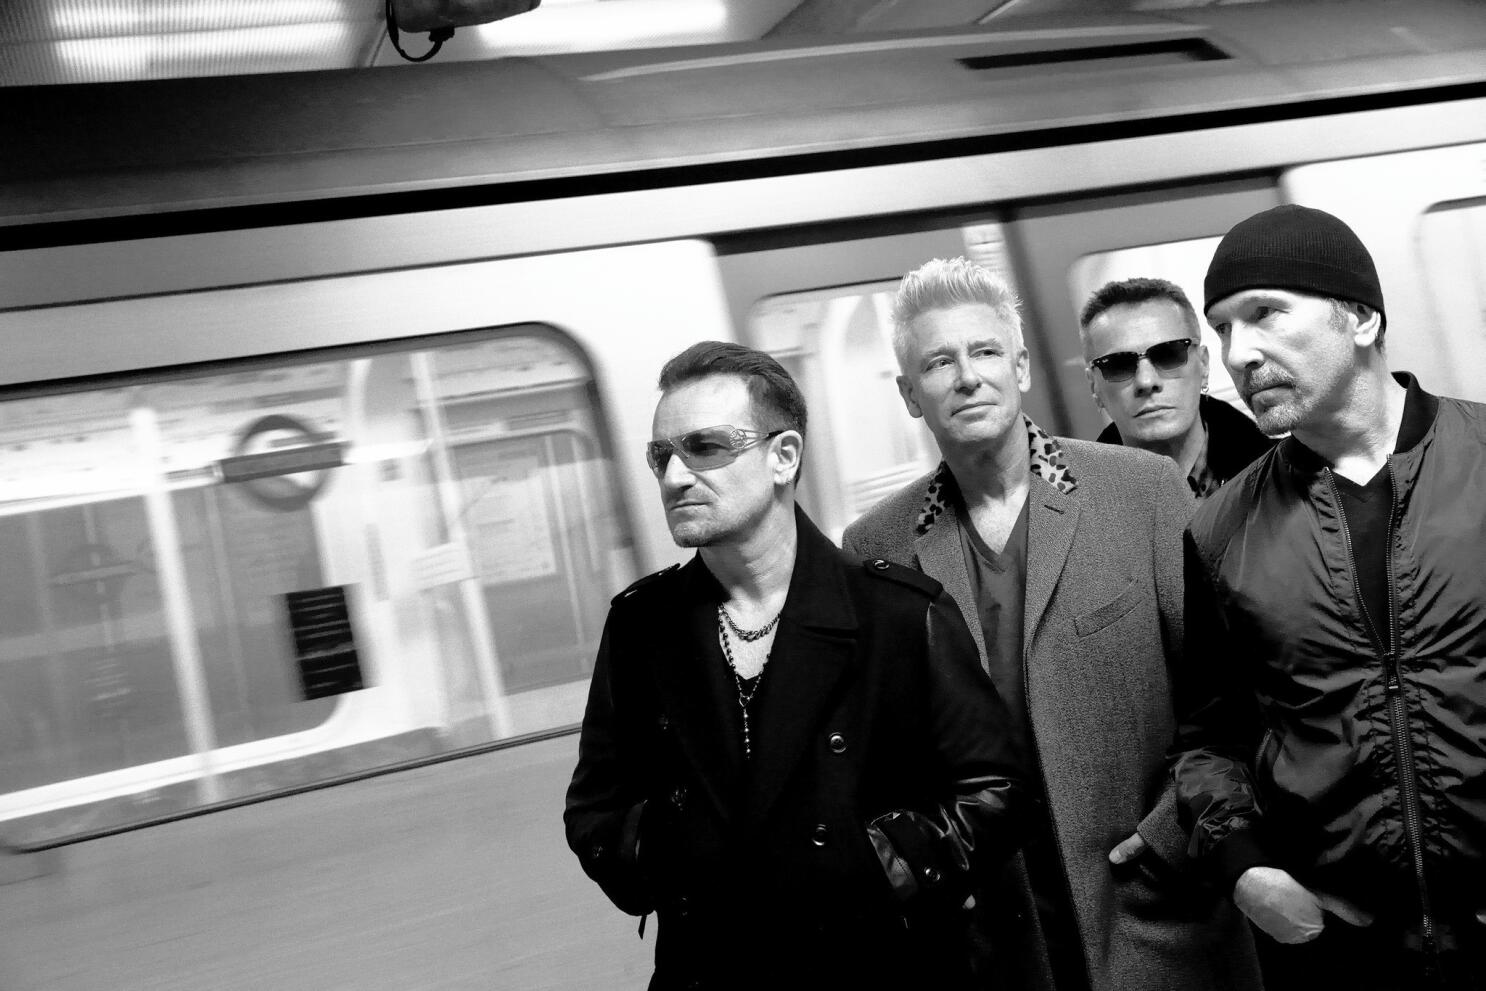 U2 - iNNOCENCE + eXPERIENCE - Treatment Studio